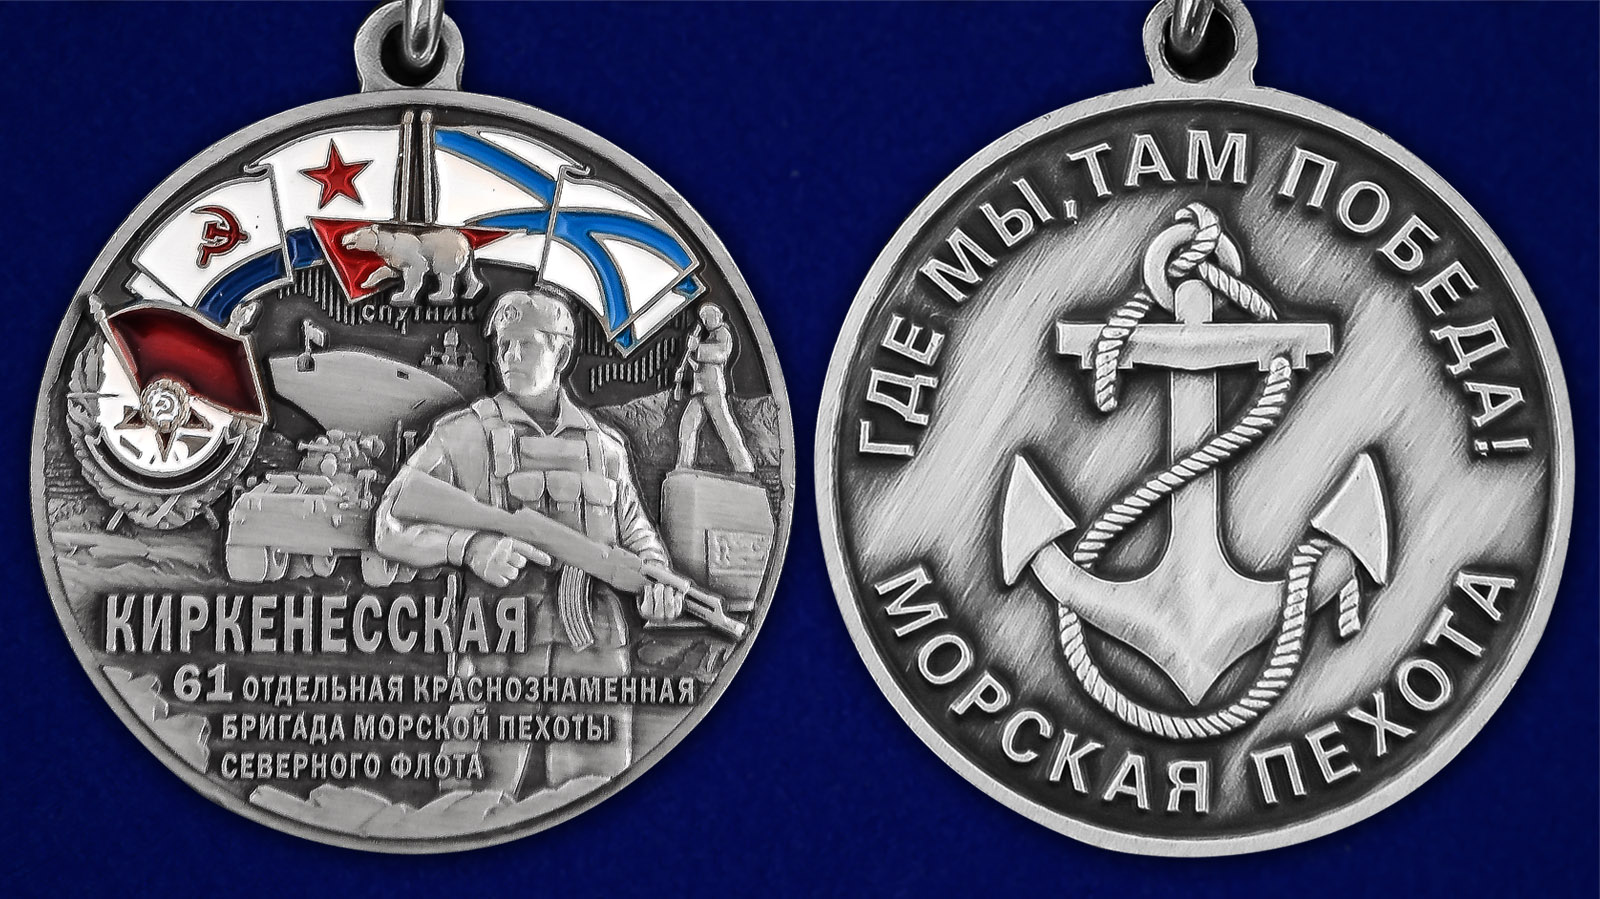 Описание медали "61-я Киркенесская бригада морской пехоты СФ" - аверс и реверс